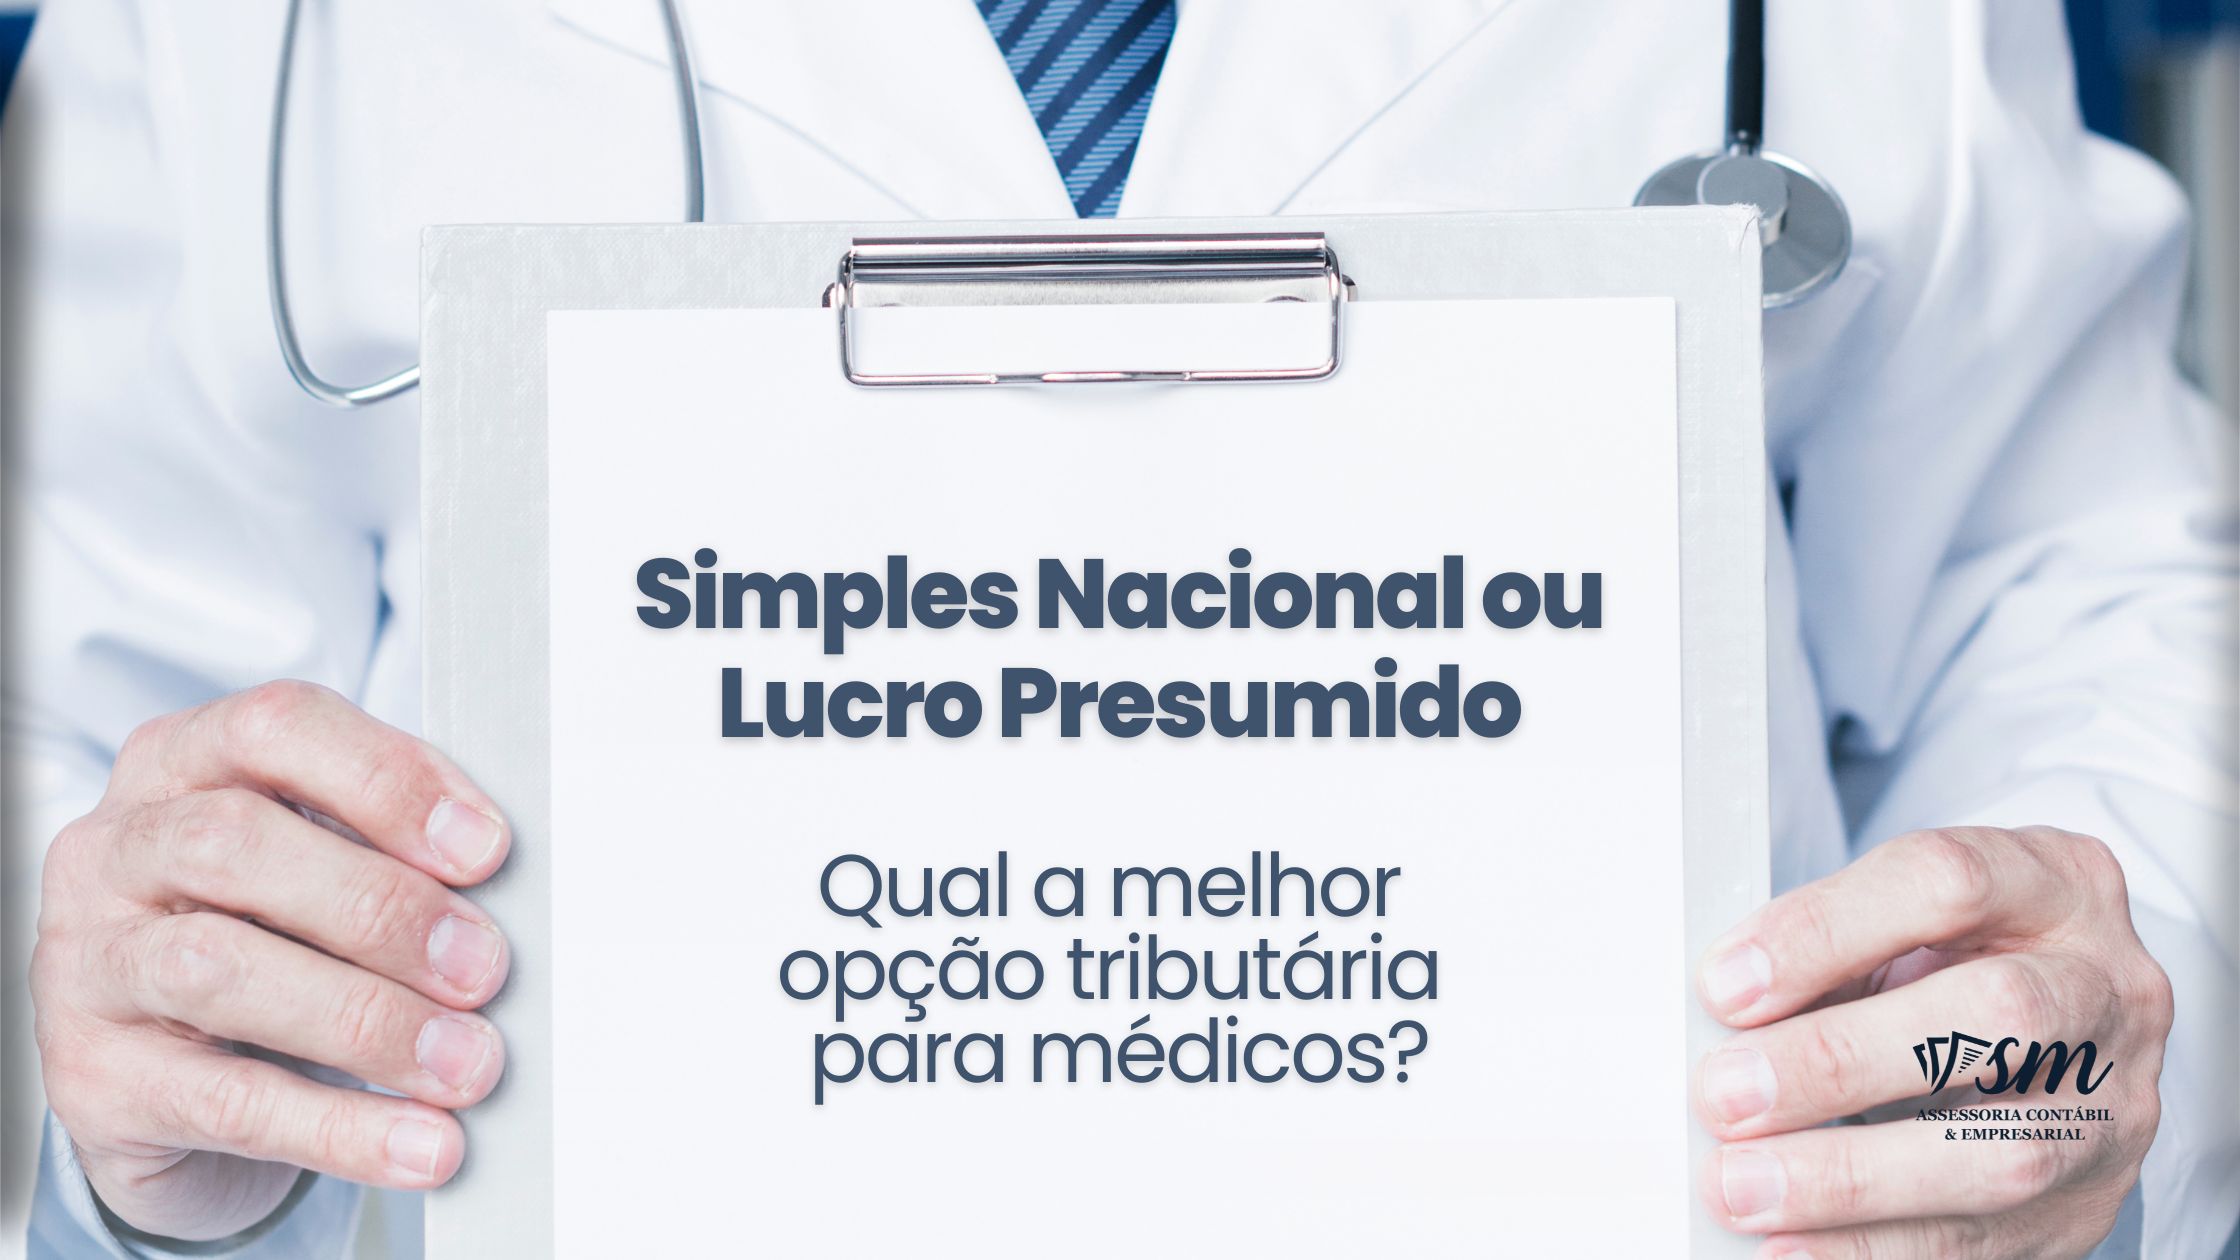 Simples Nacional Ou Lucro Presumido: Qual A Melhor Opção Tributária Para Médicos?